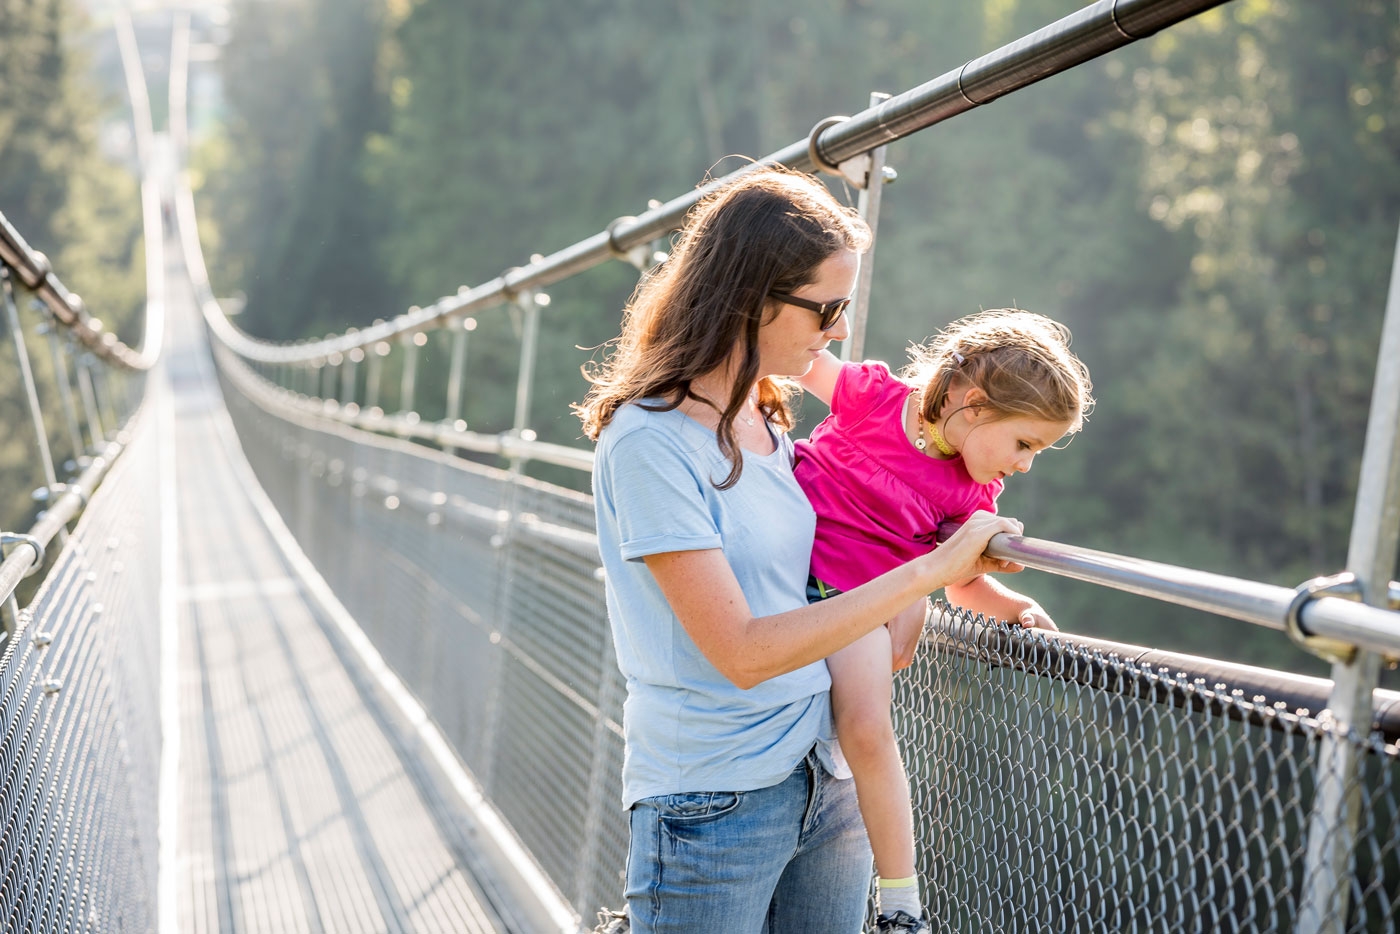 Eine Mutter hat ihre Tochter auf dem Arm und sie schauen beide von der Hängebrücke auf der sie stehen hinunter. 